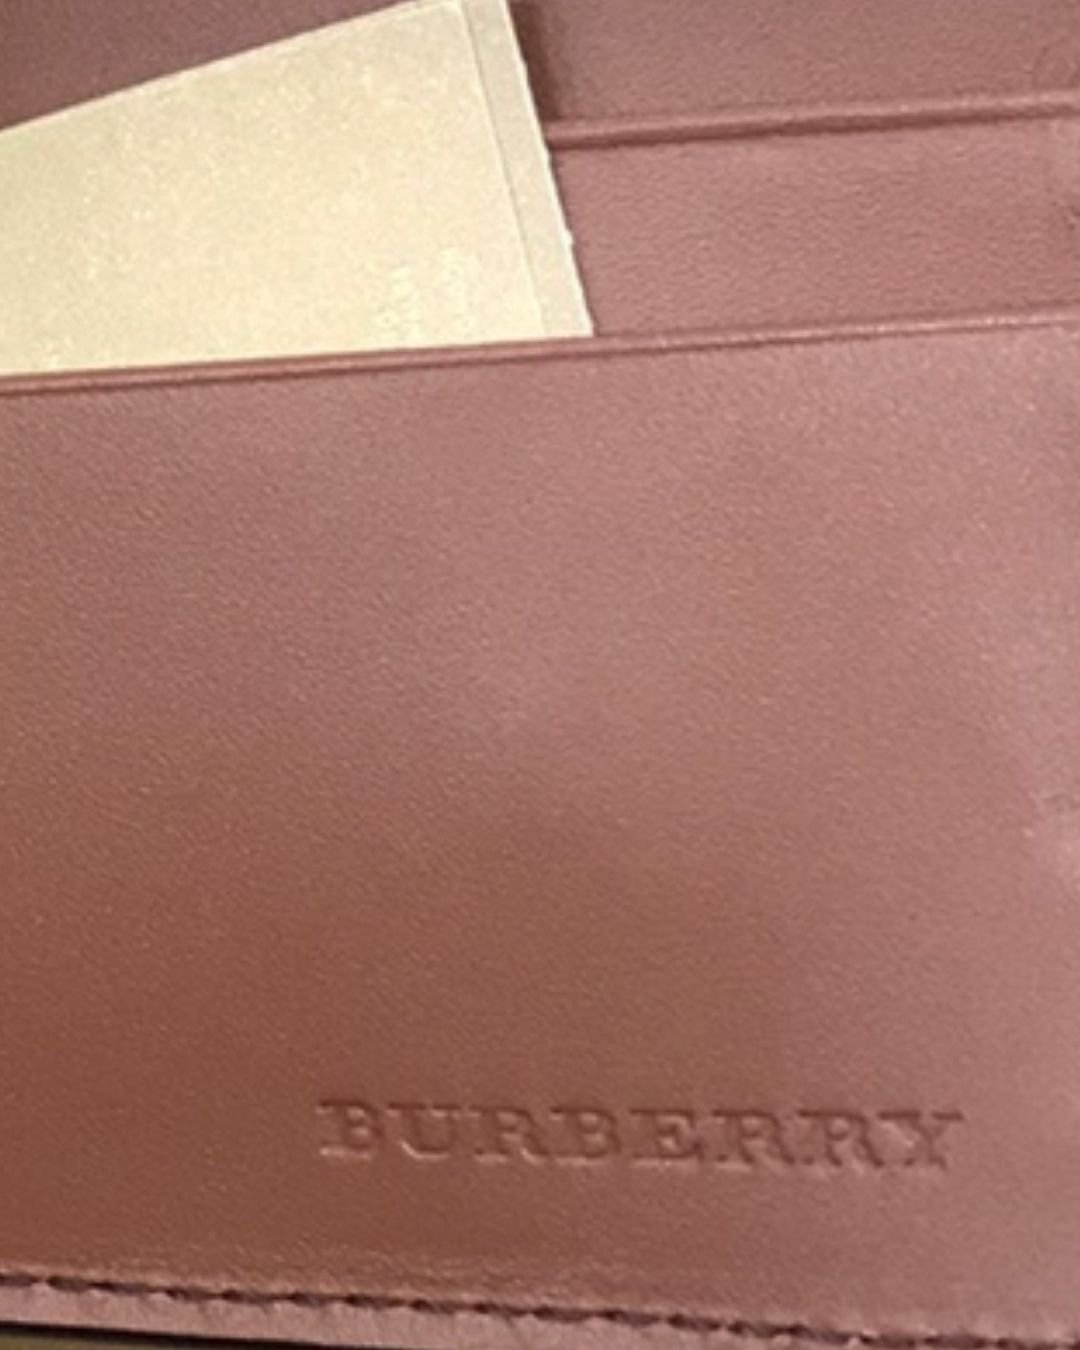 BURBERRY バーバリー 財布 レディース 折りたたみ財布 - 海外ブランド 